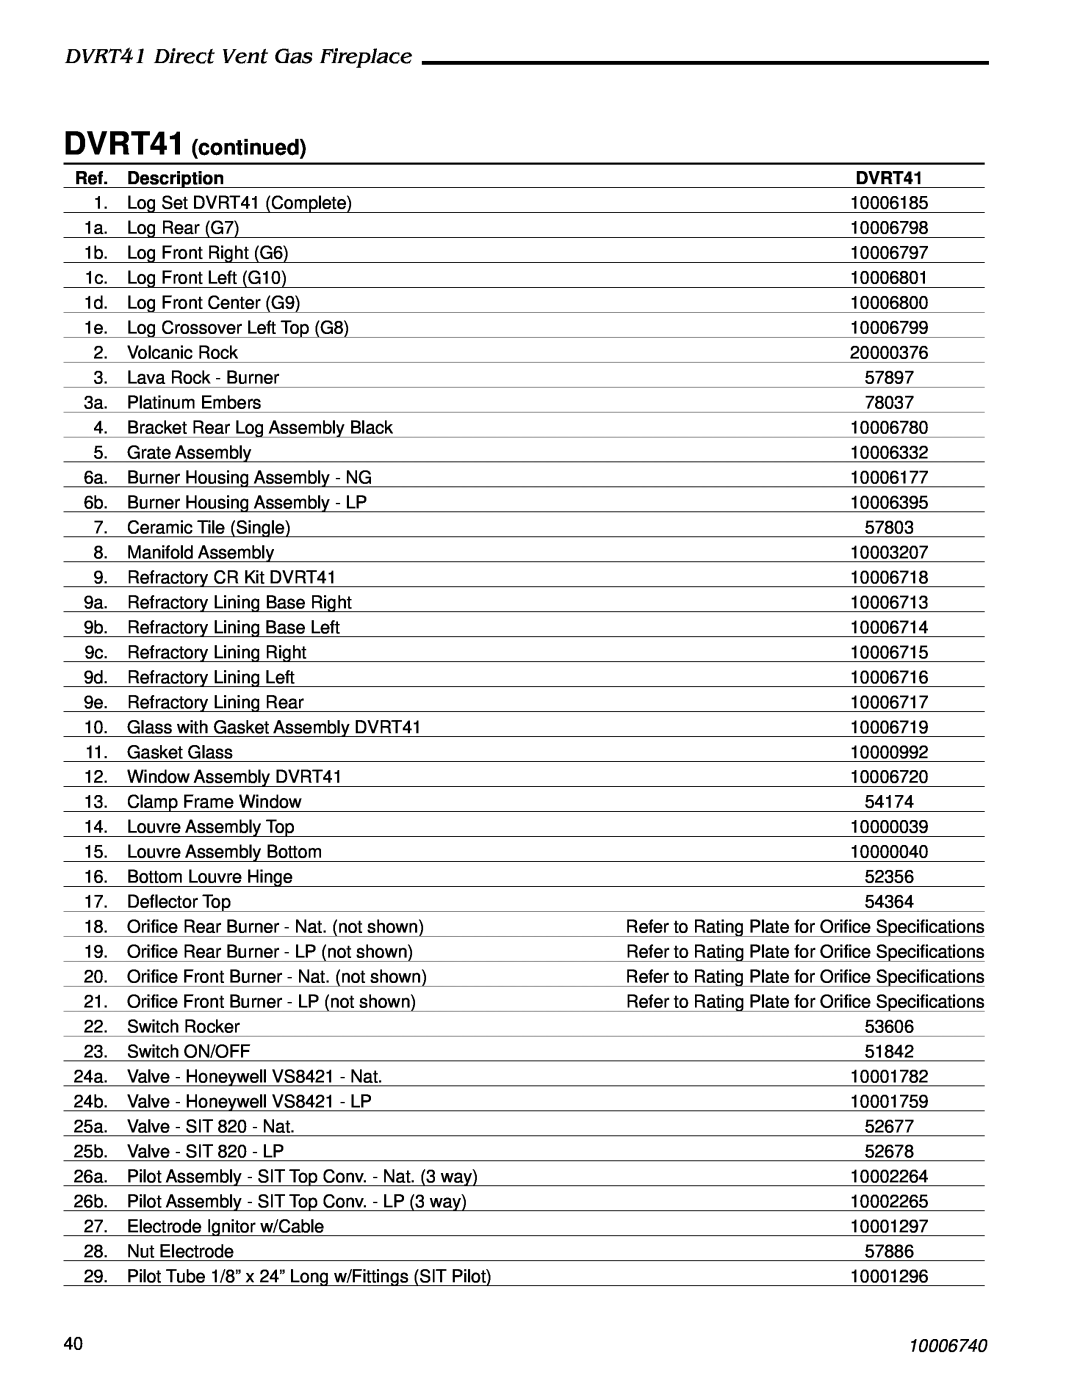 Vermont Casting manual DVRT41 Direct Vent Gas Fireplace, DVRT41 continued, Description, 10006740 